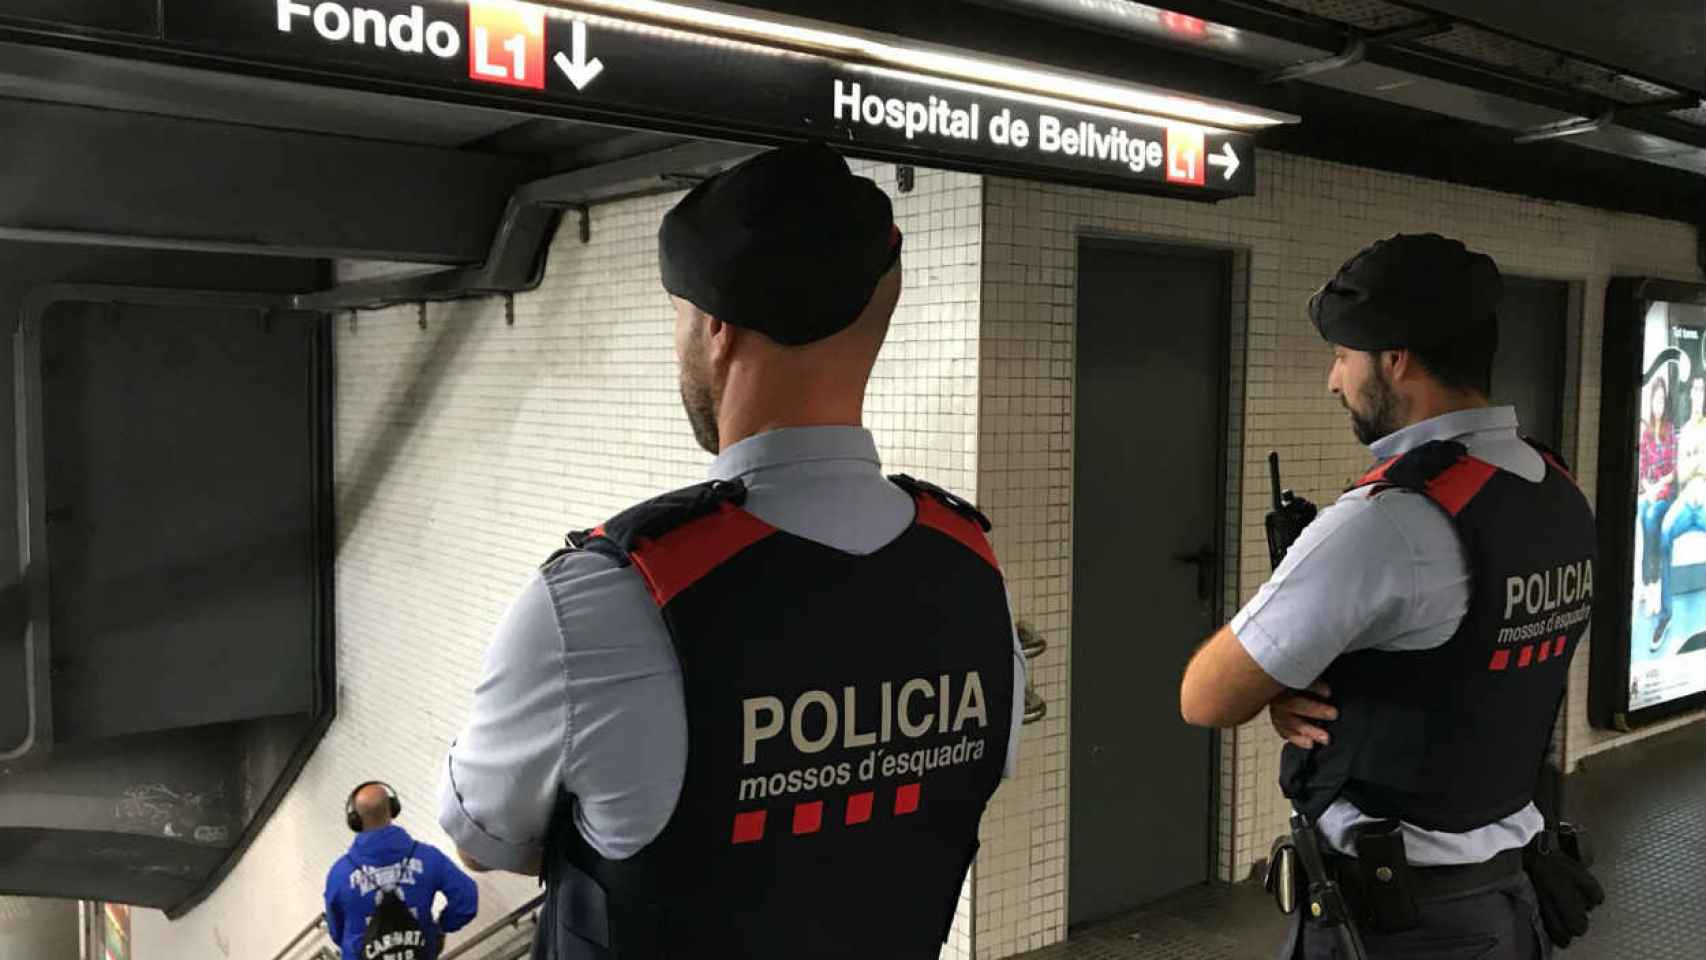 Mossos d'Esquadra vigilan una estación del metro, imagen de archivo / Mossos d'Esquadra